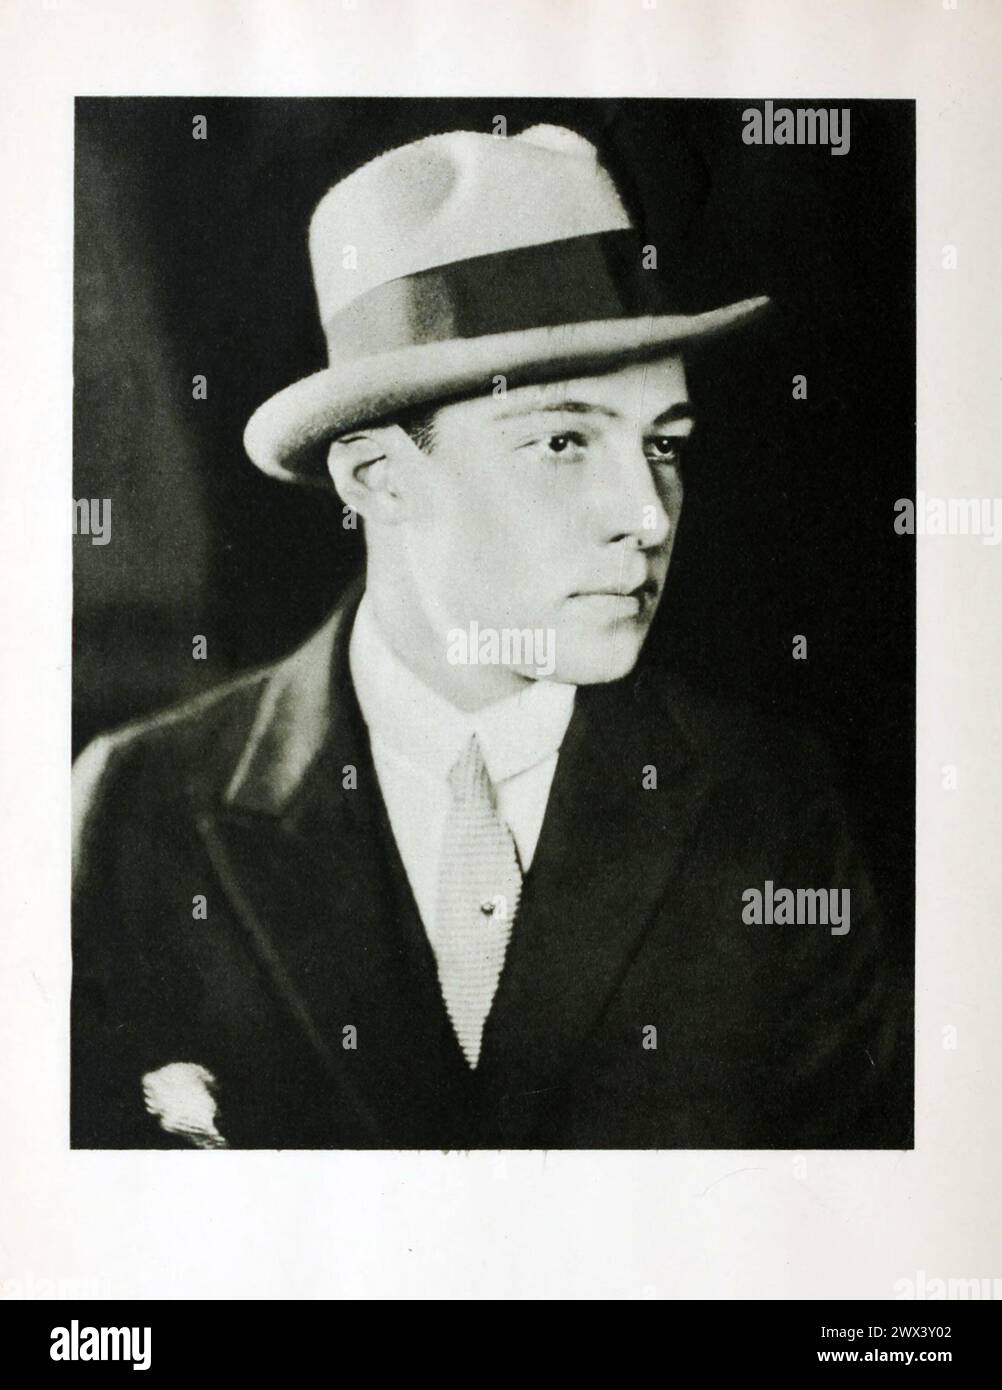 Ritratto di Rodolfo Valentino. Vintage Photoplay Magazine Fotografia ritratto dell'attore cinematografico, circa 1920 Foto Stock